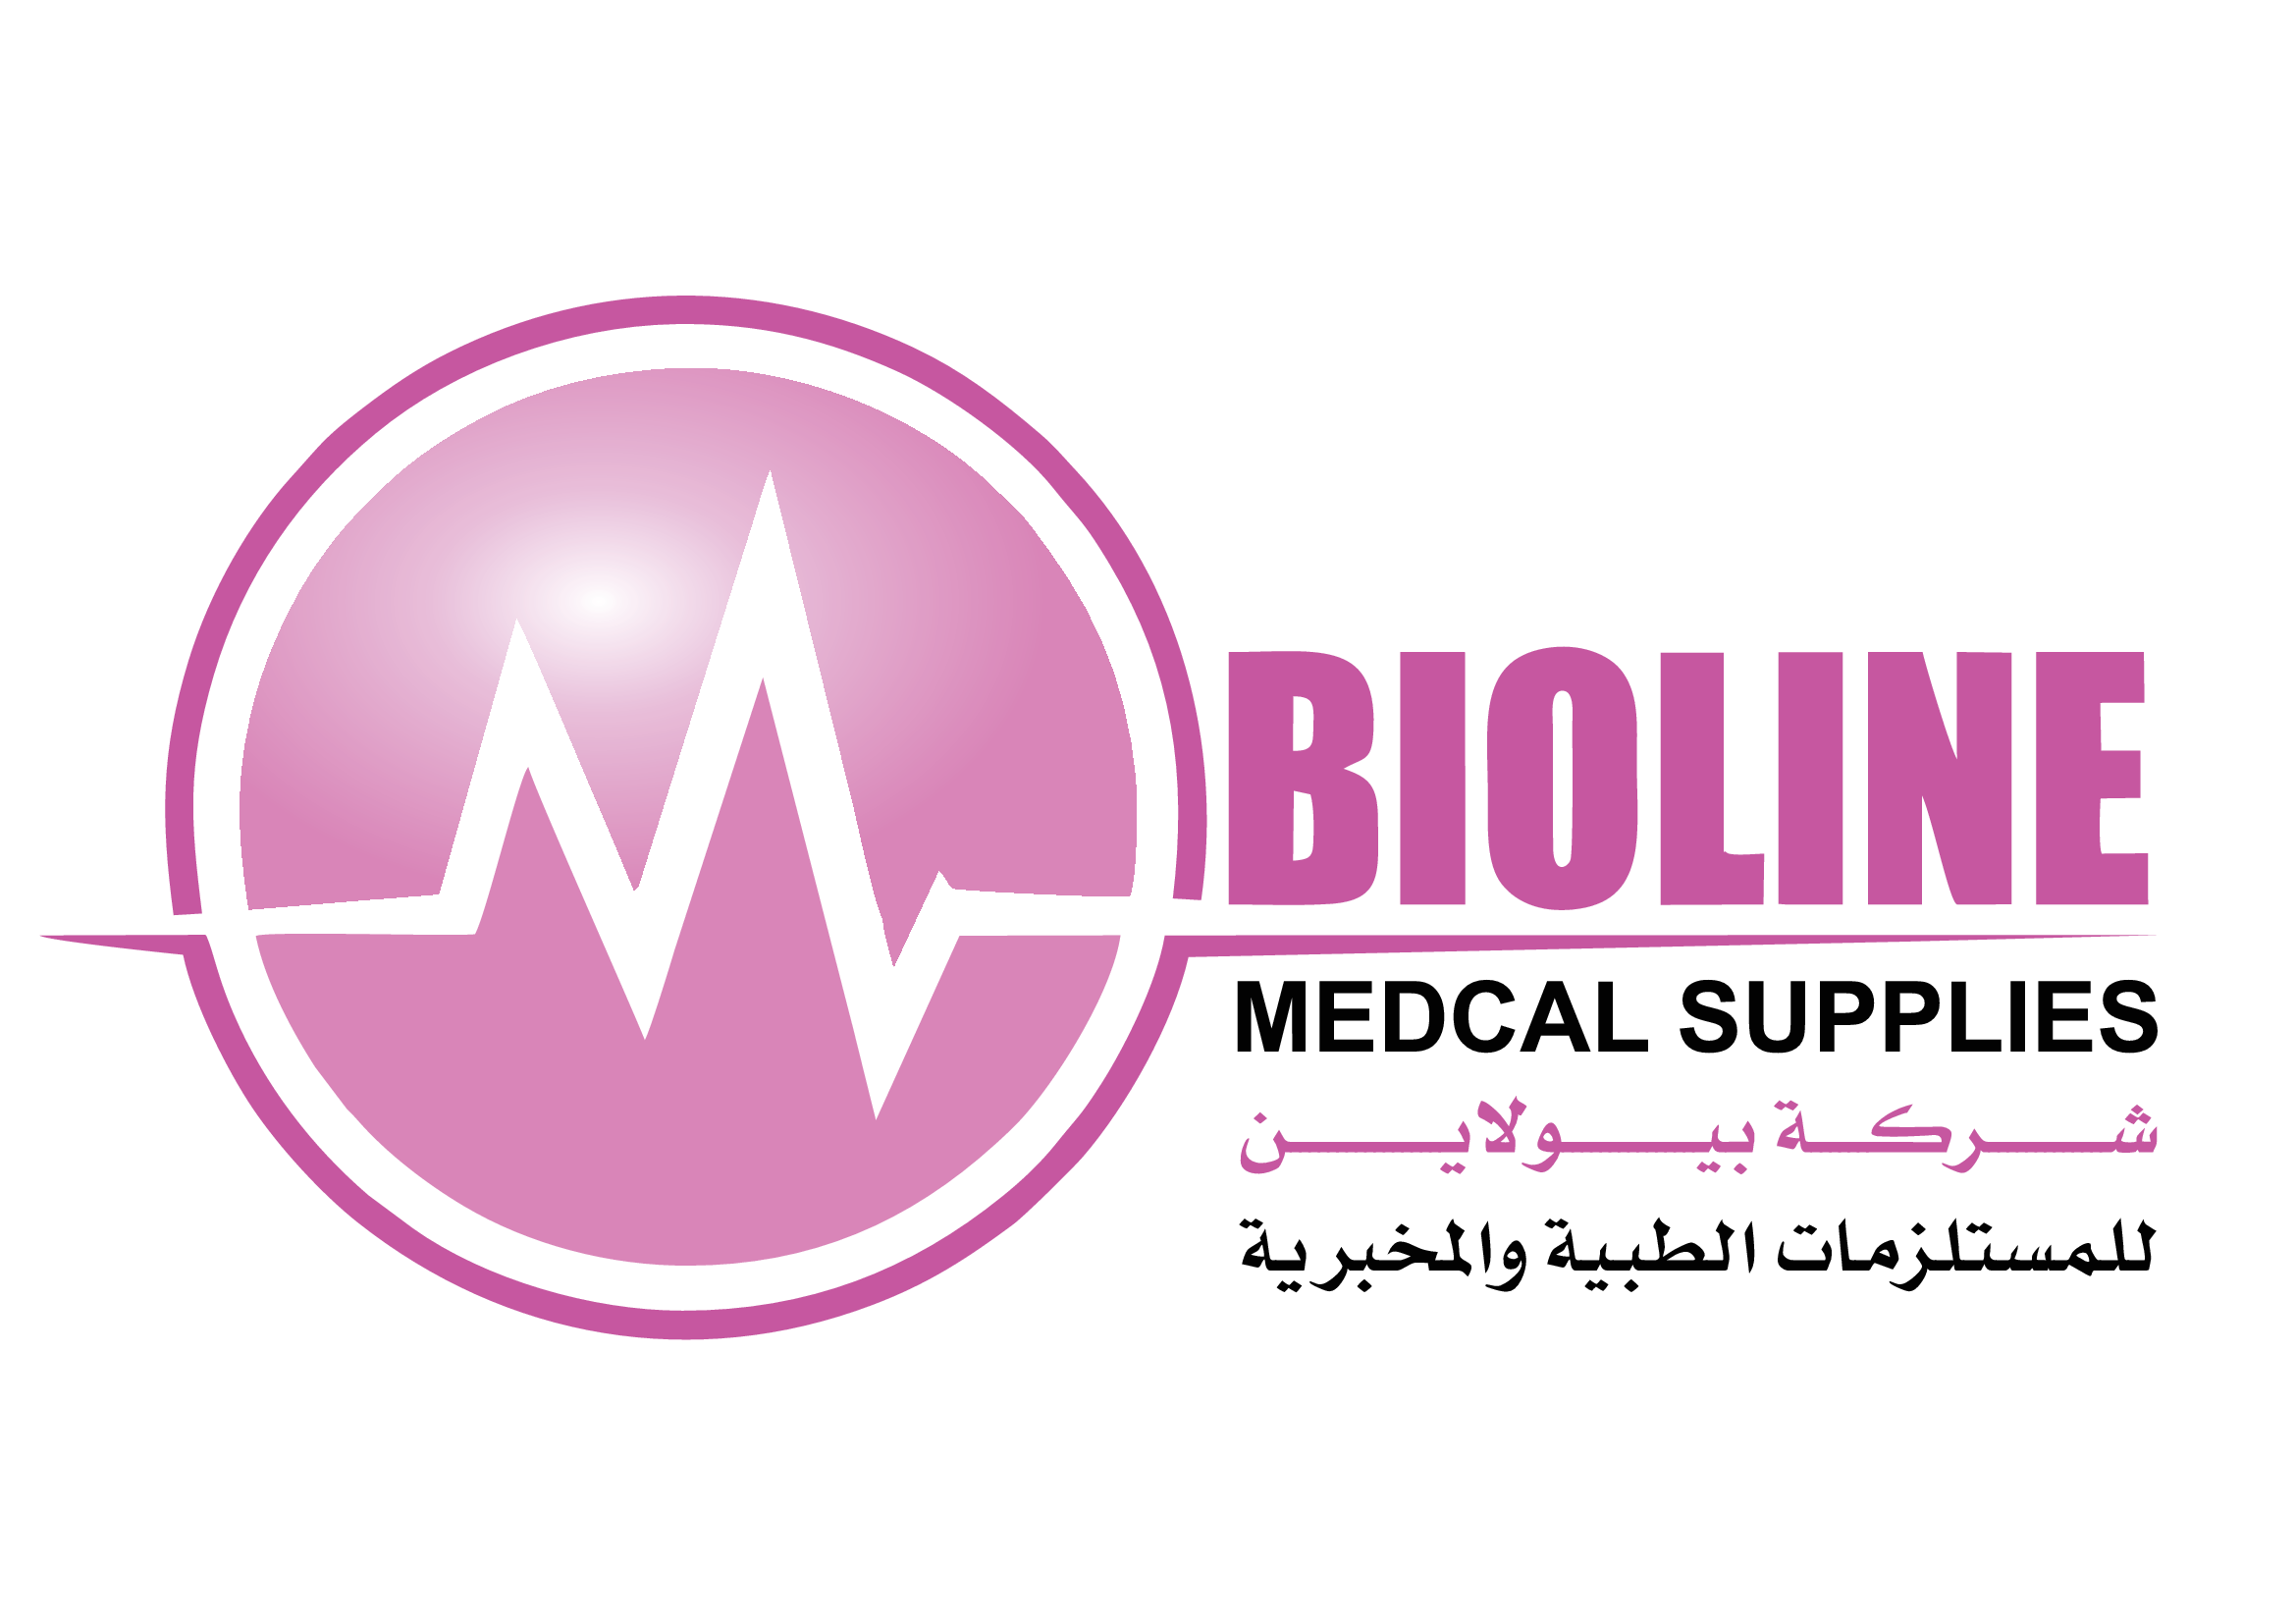 BioLine